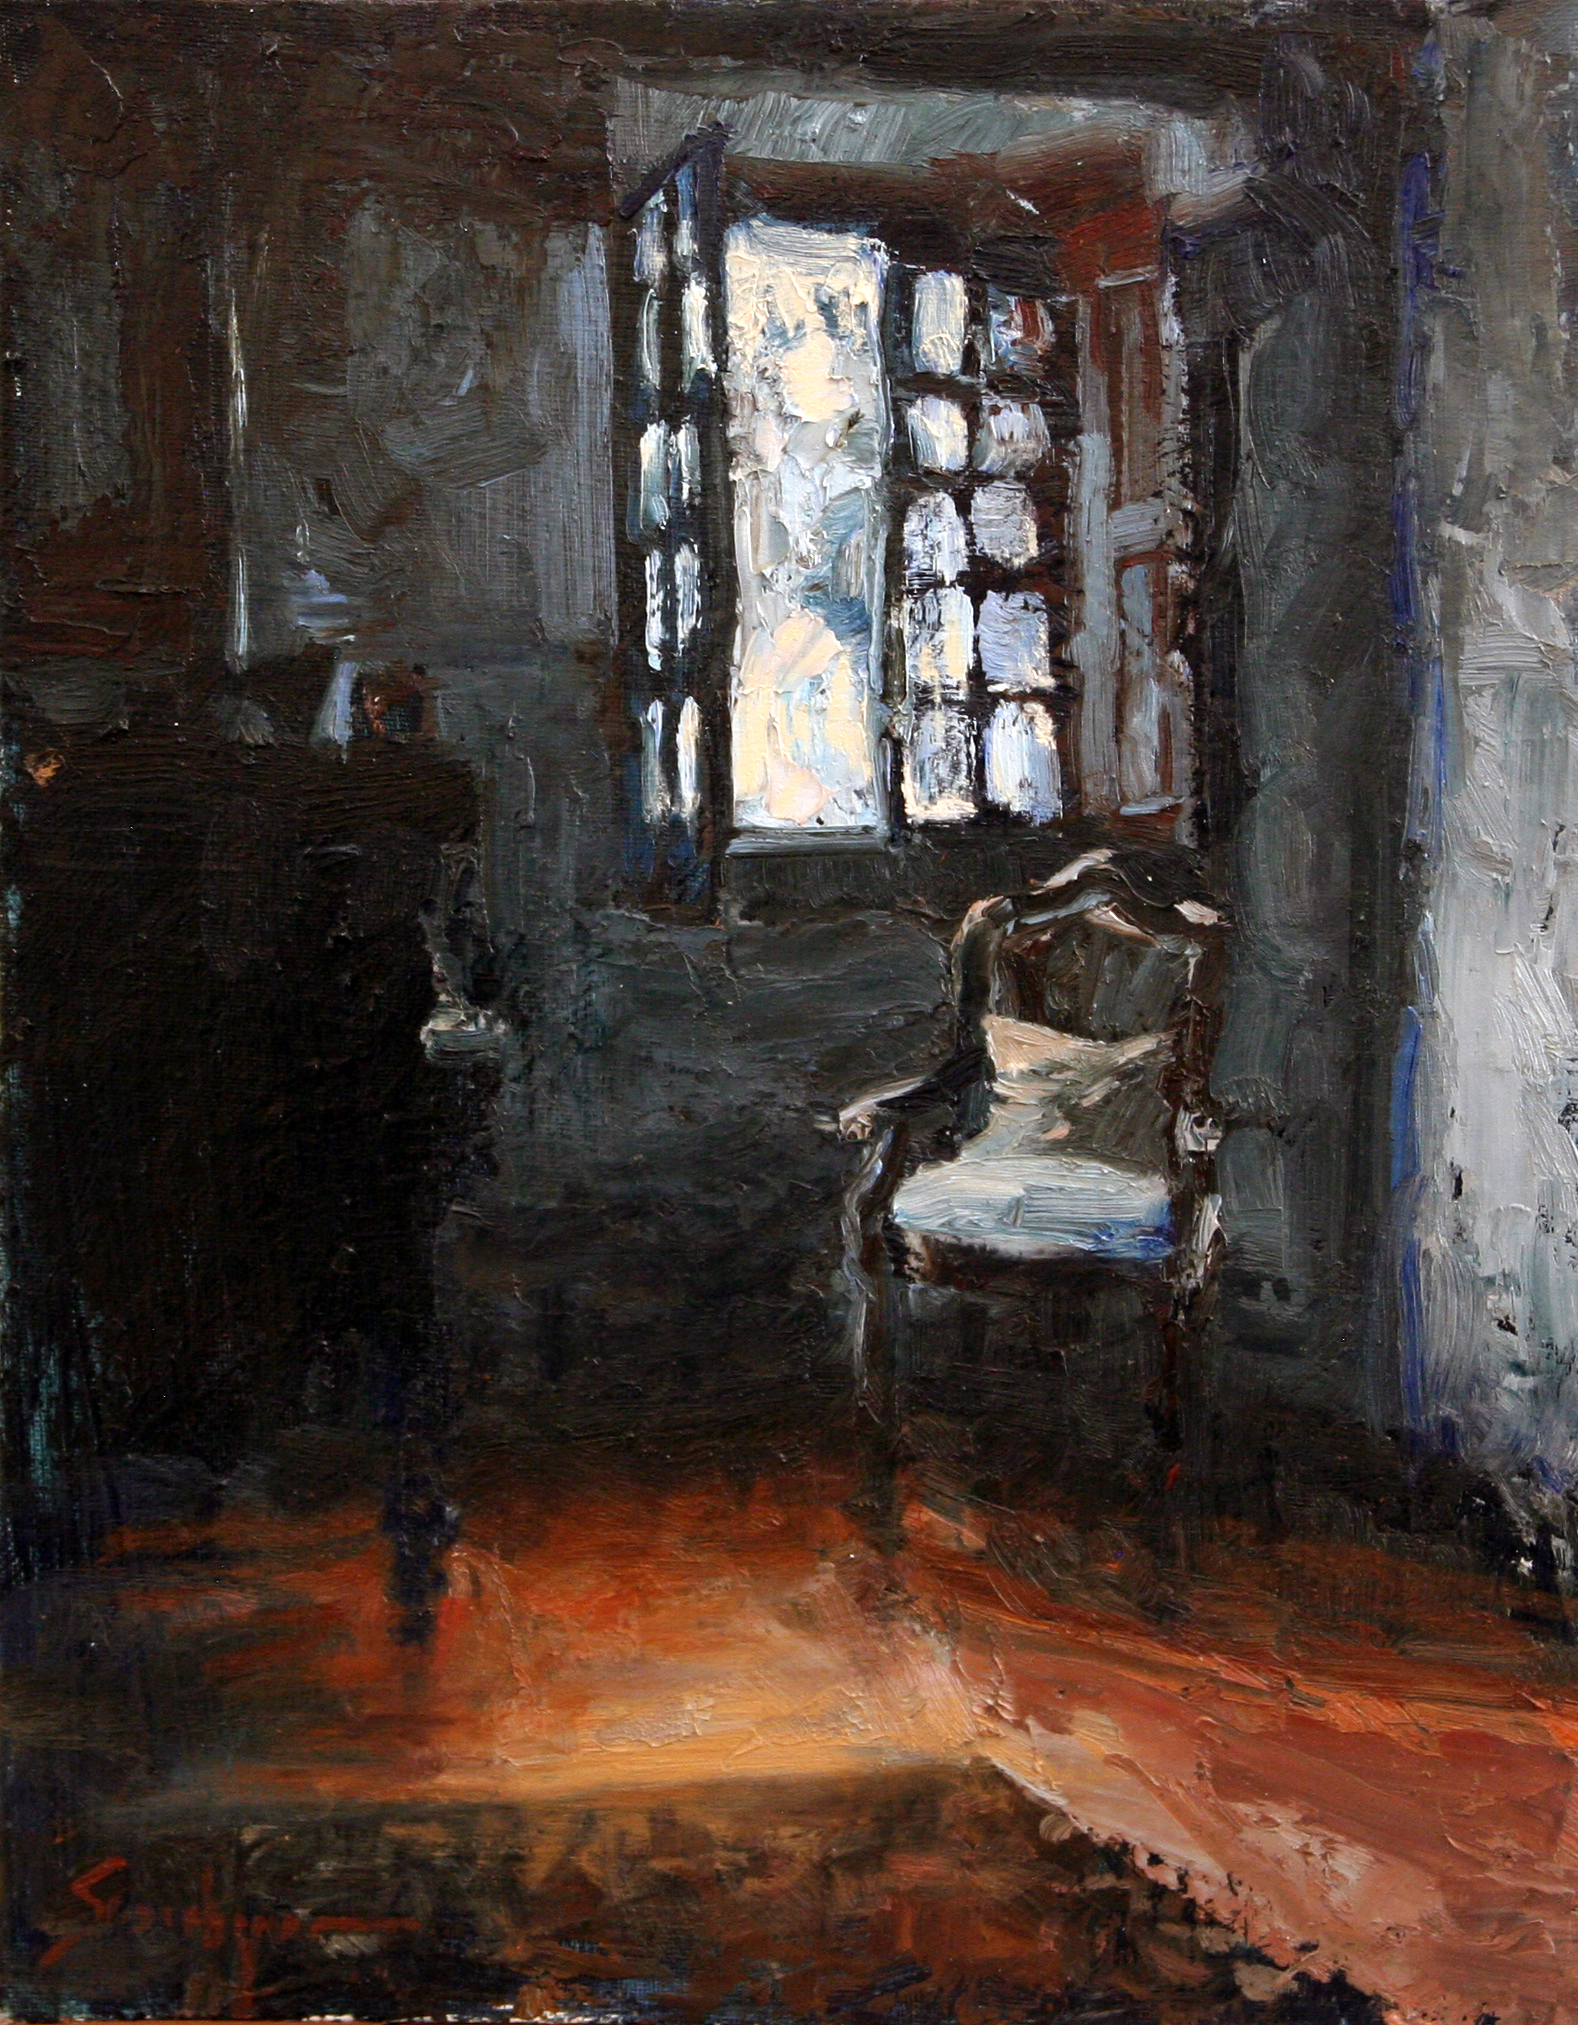 Susie Hyer, "Darkened Room Series - Cornered," oil on canvas, 12 x 9 in.